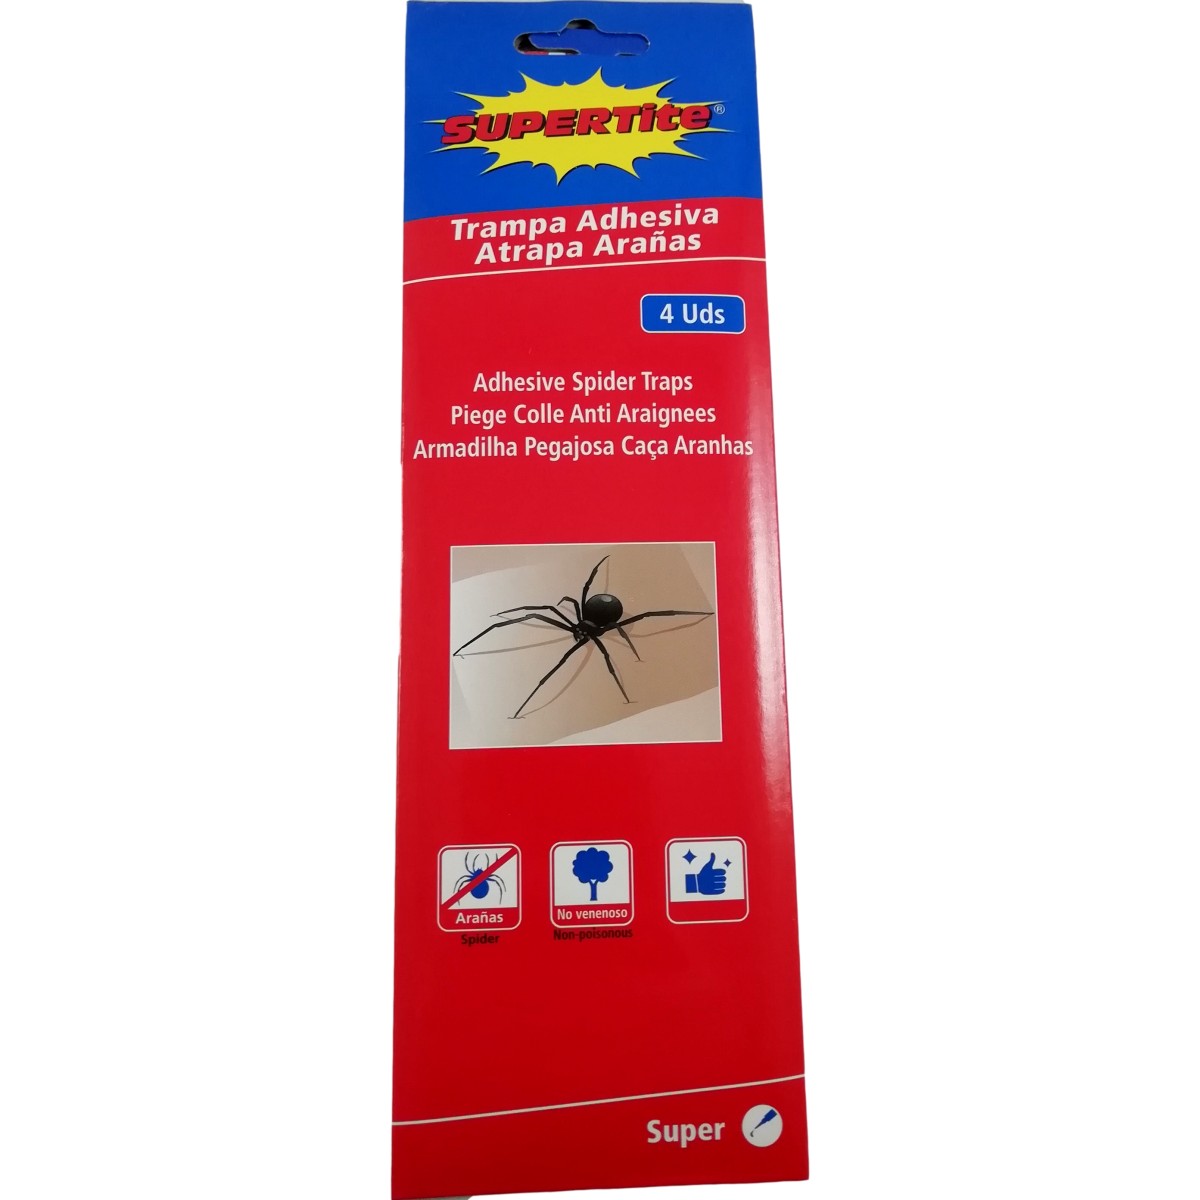 4 Pièges à Colle pour Araignées Nuisibles Insectes Rampants Anti Spider